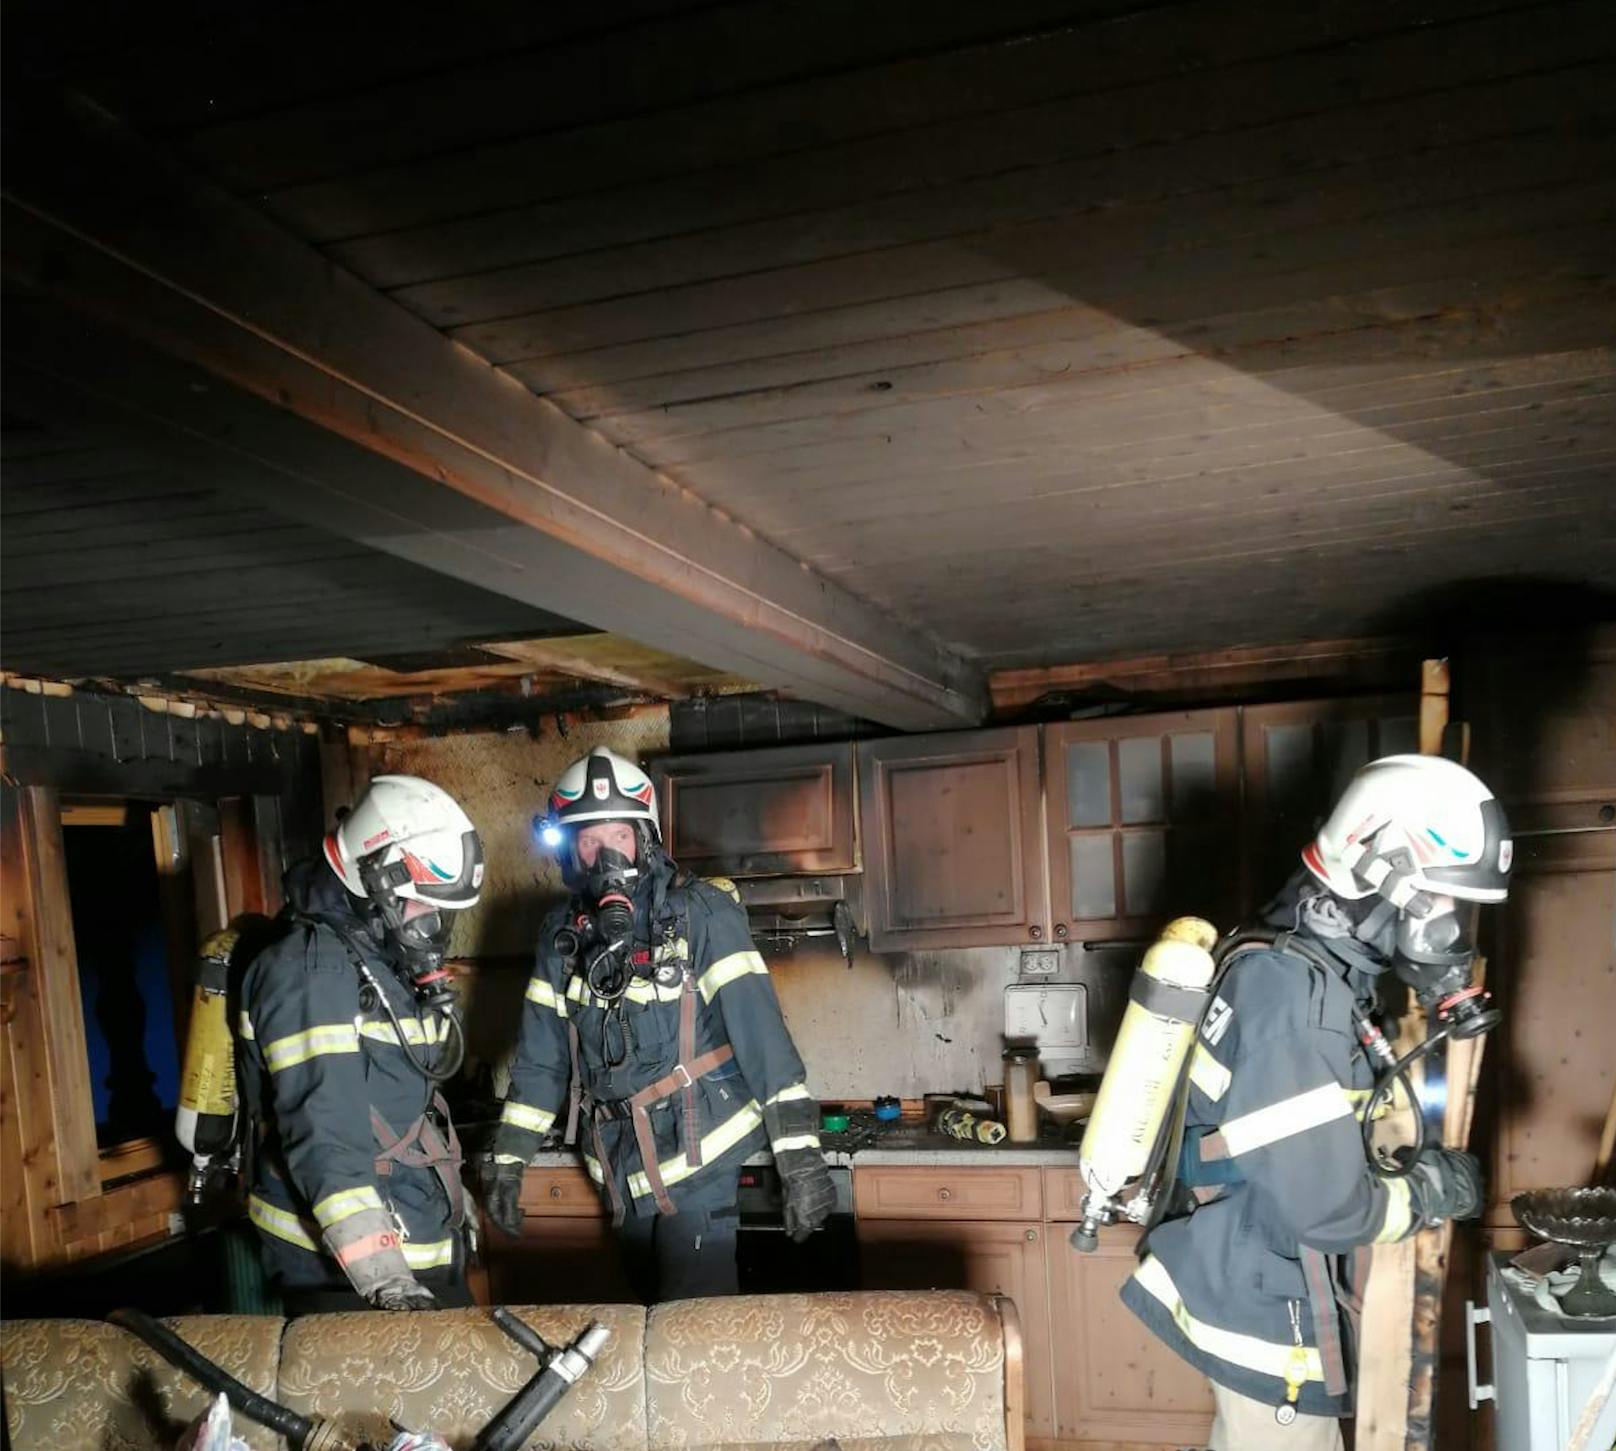 Die Bewohner versuchten noch, das Feuer zu löschen, was ihnen jedoch nicht gelang. Sie alarmierten per Notruf die Einsatzkräfte.